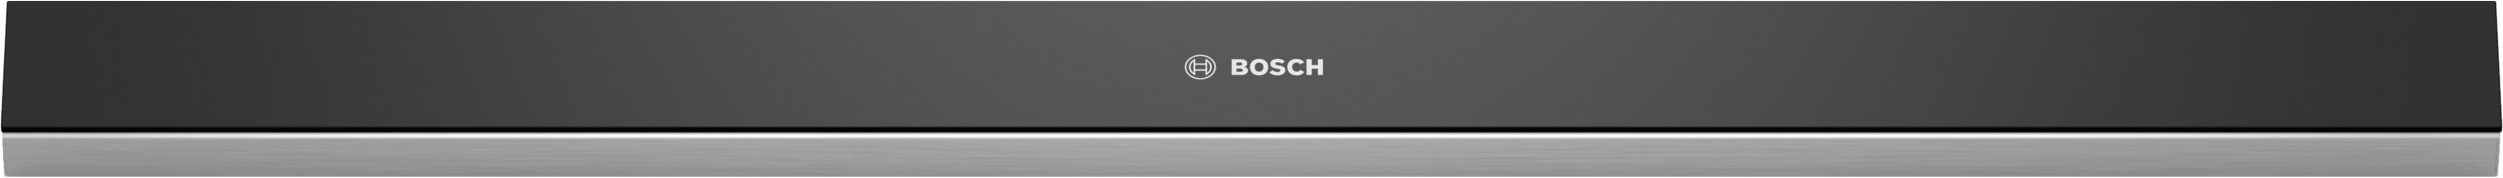 Bosch DSZ4686 Afzuigkap accessoire Zwart